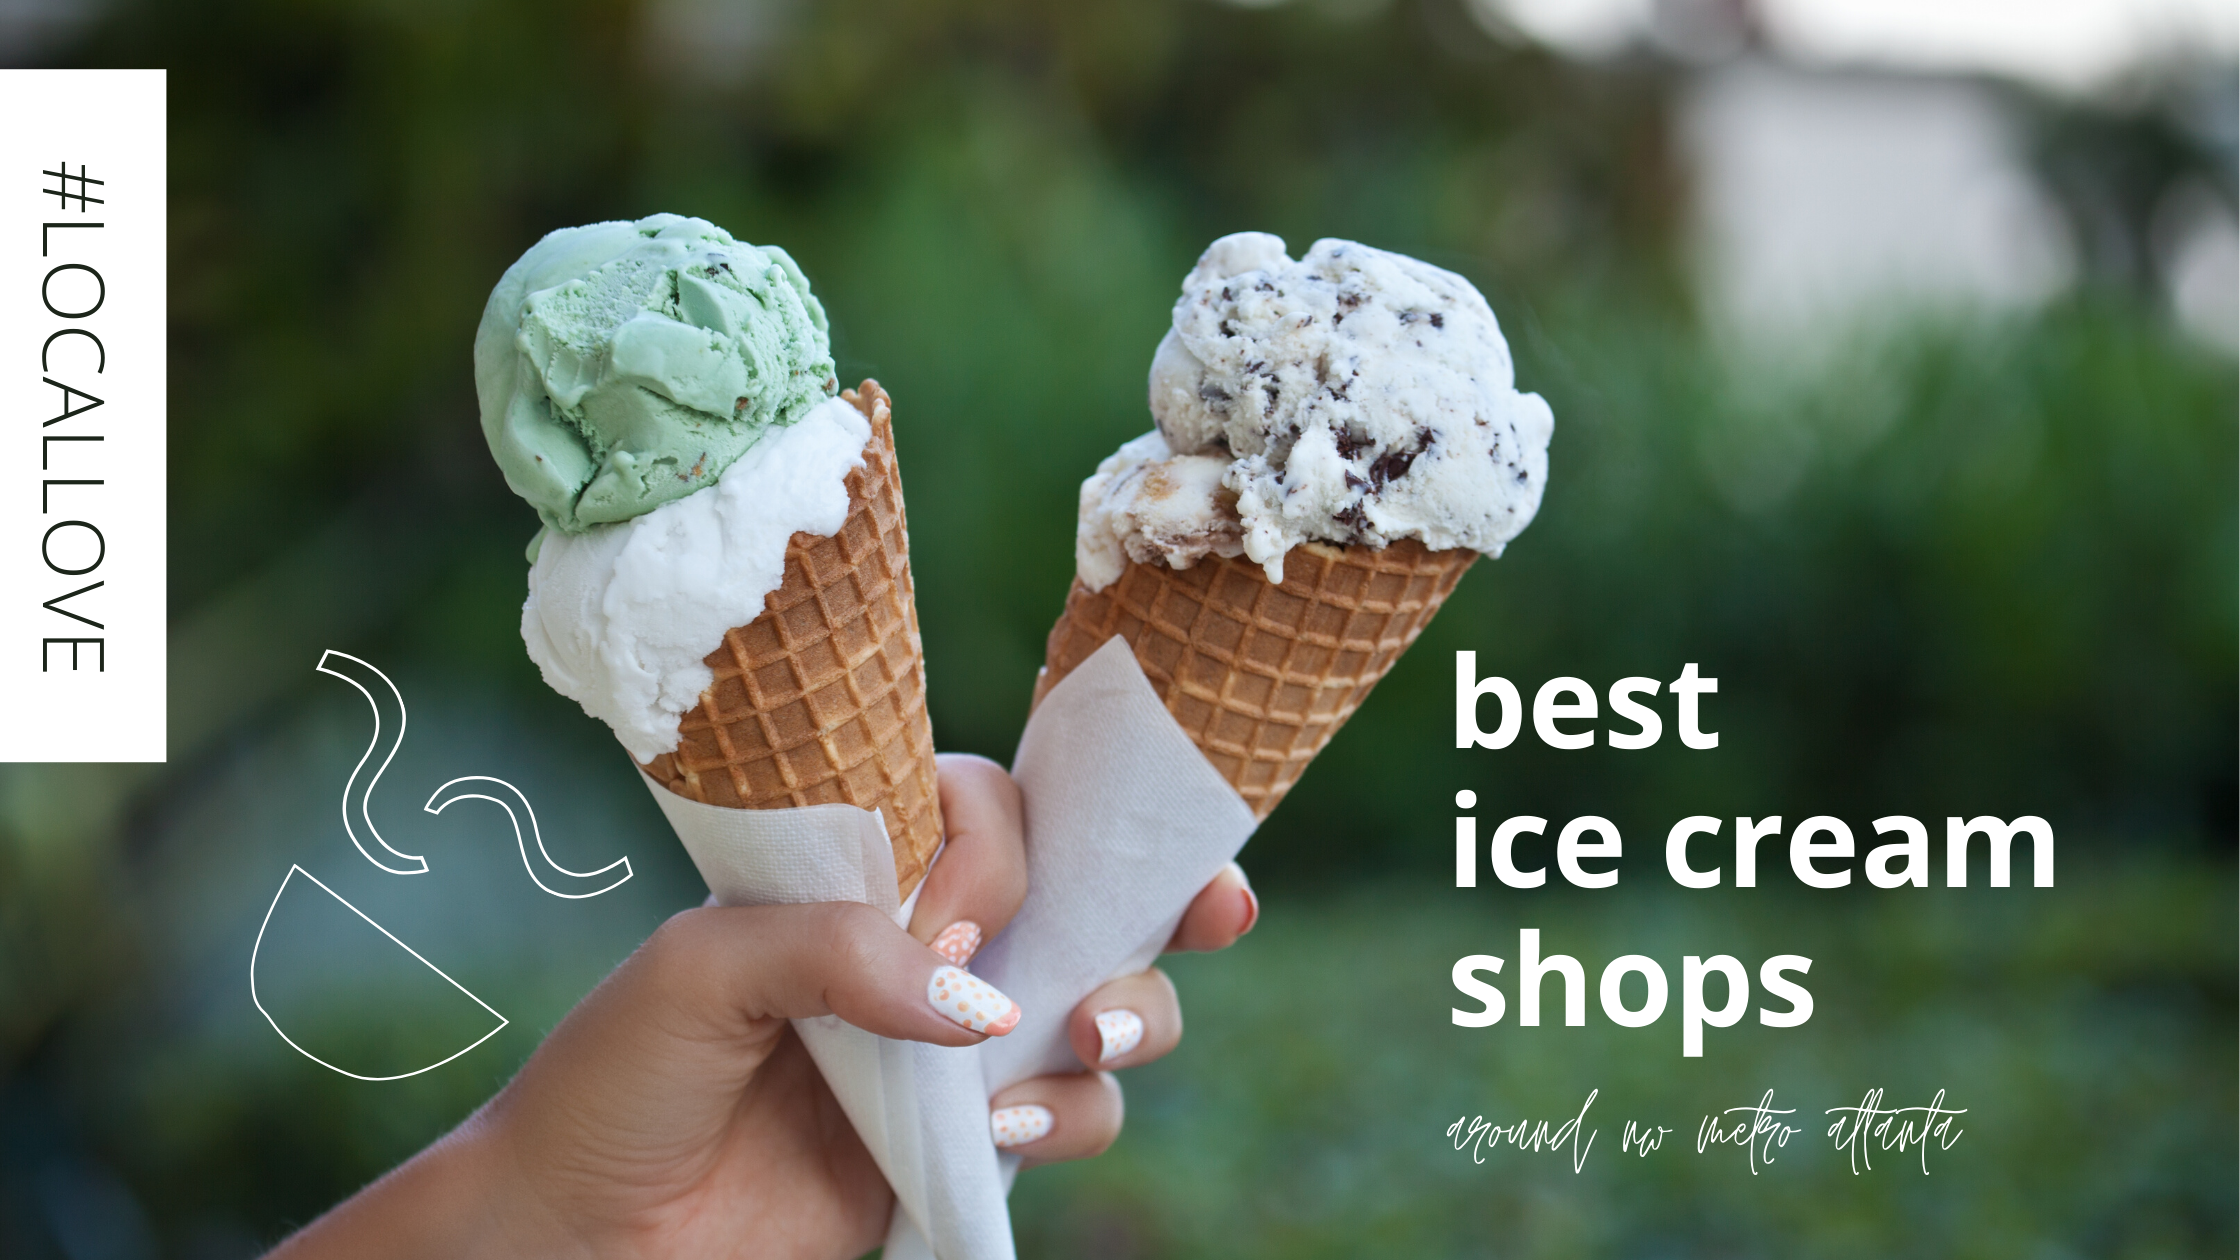 best ice cream shops around nw metro atlanta